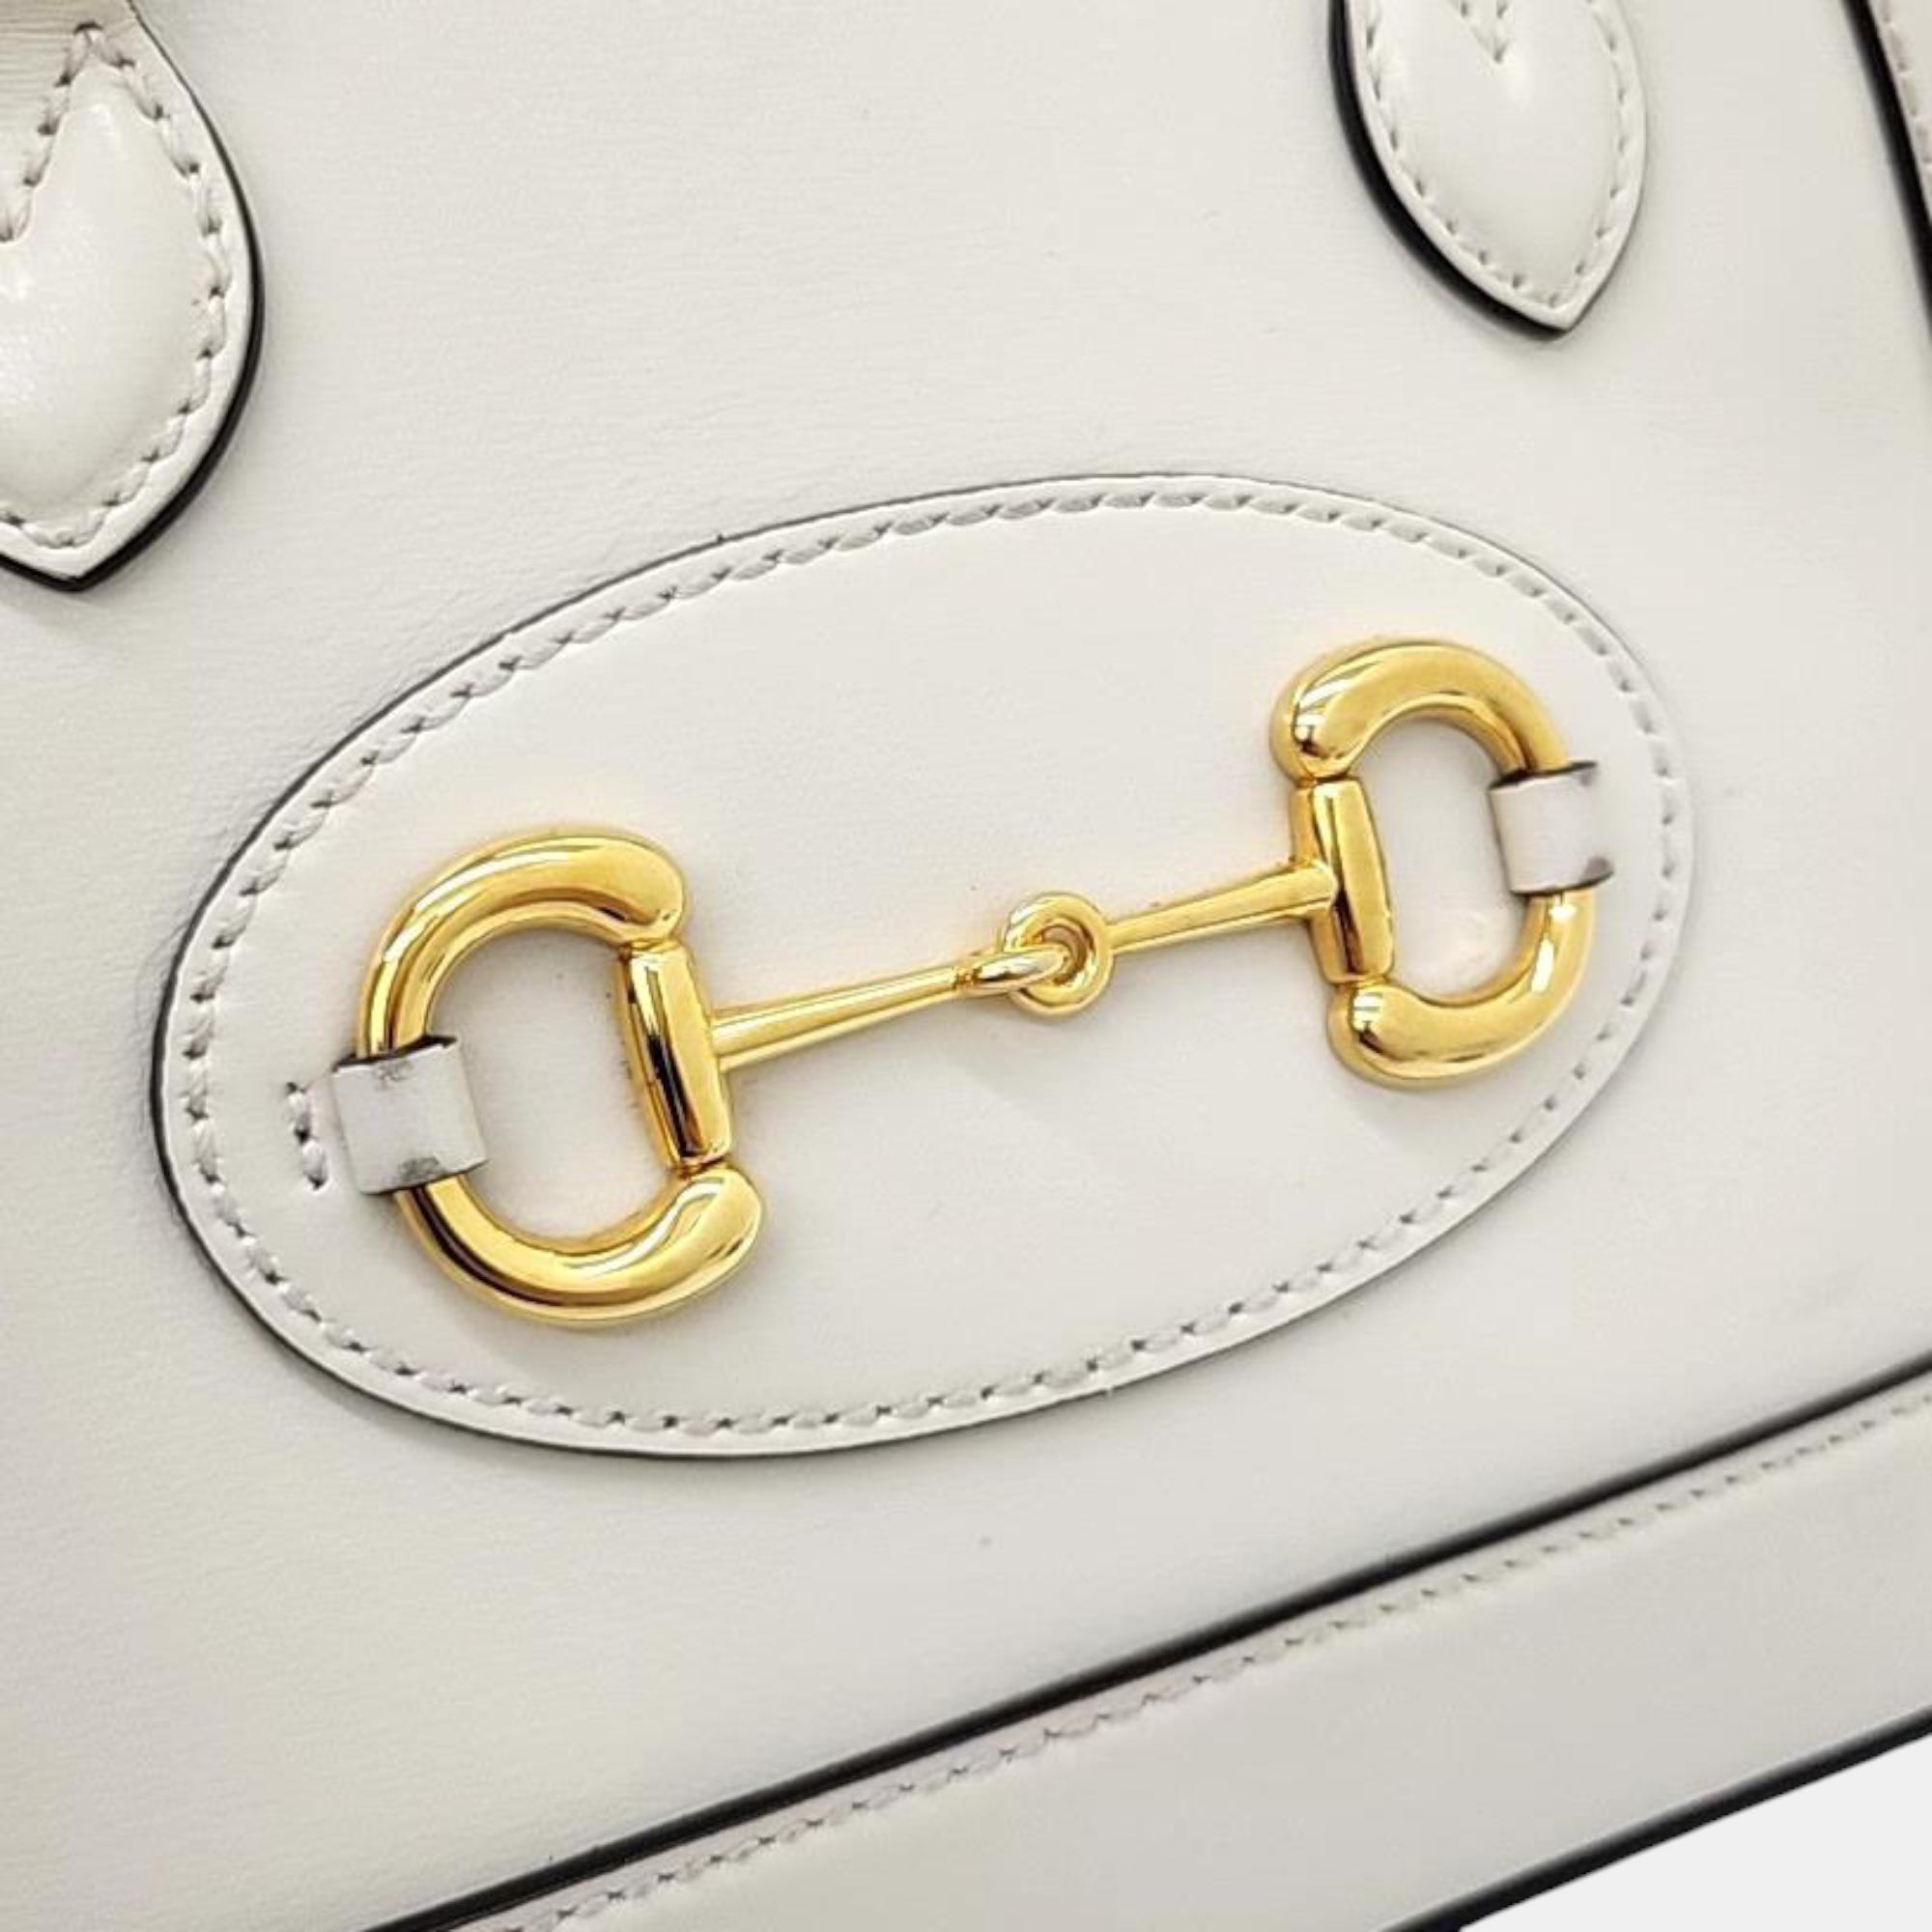 Gucci Horsebit 1955 Mini Top Handle Bag (640716)